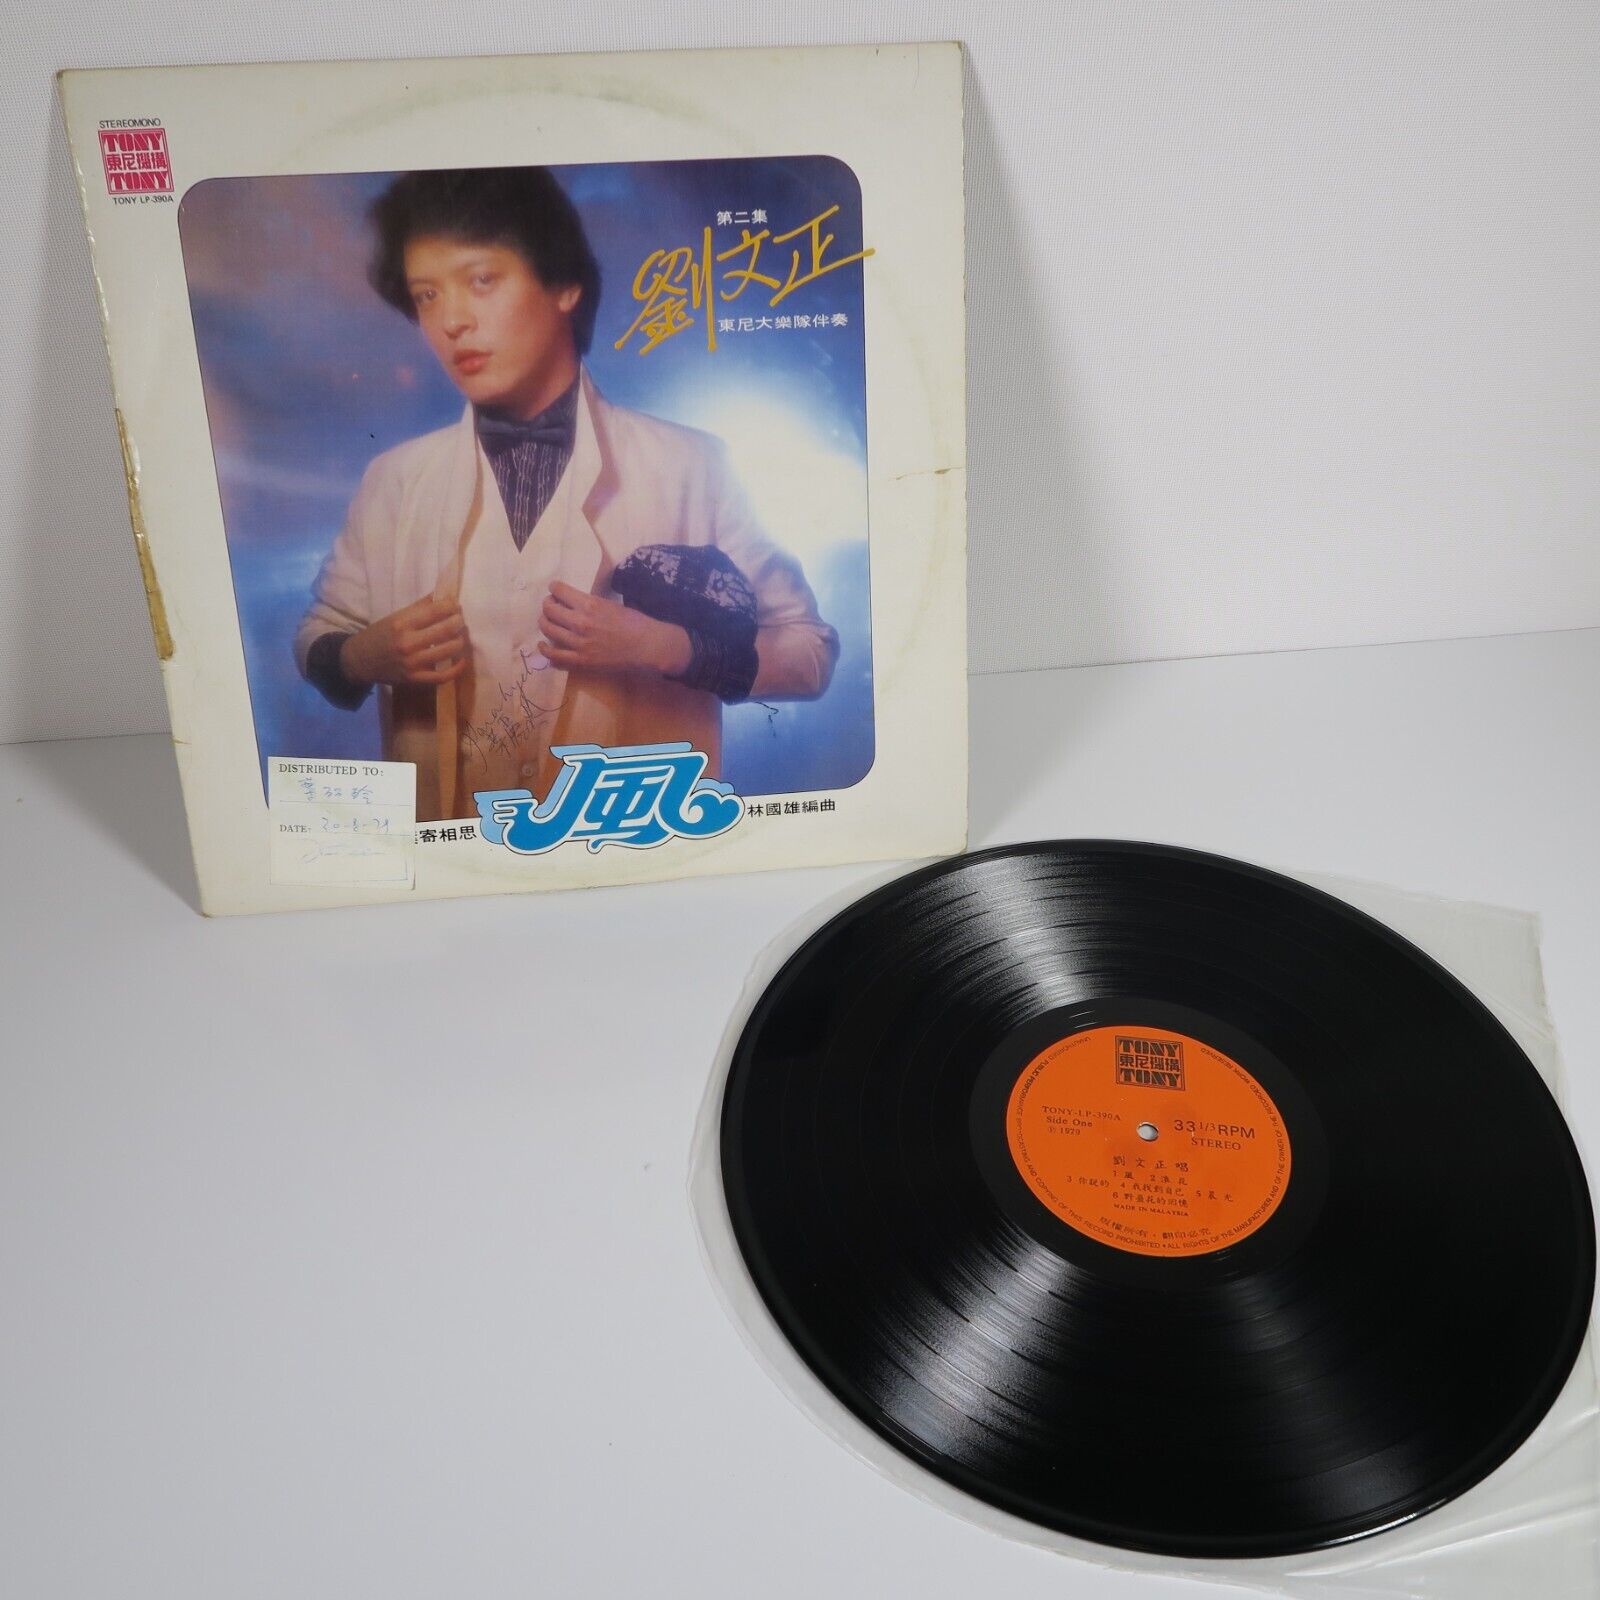 VTG 1979 Liu Wen Zheng Steromono Tony LP- 390A Hai Shan Taiwan Pop 33 RPM Vinyl